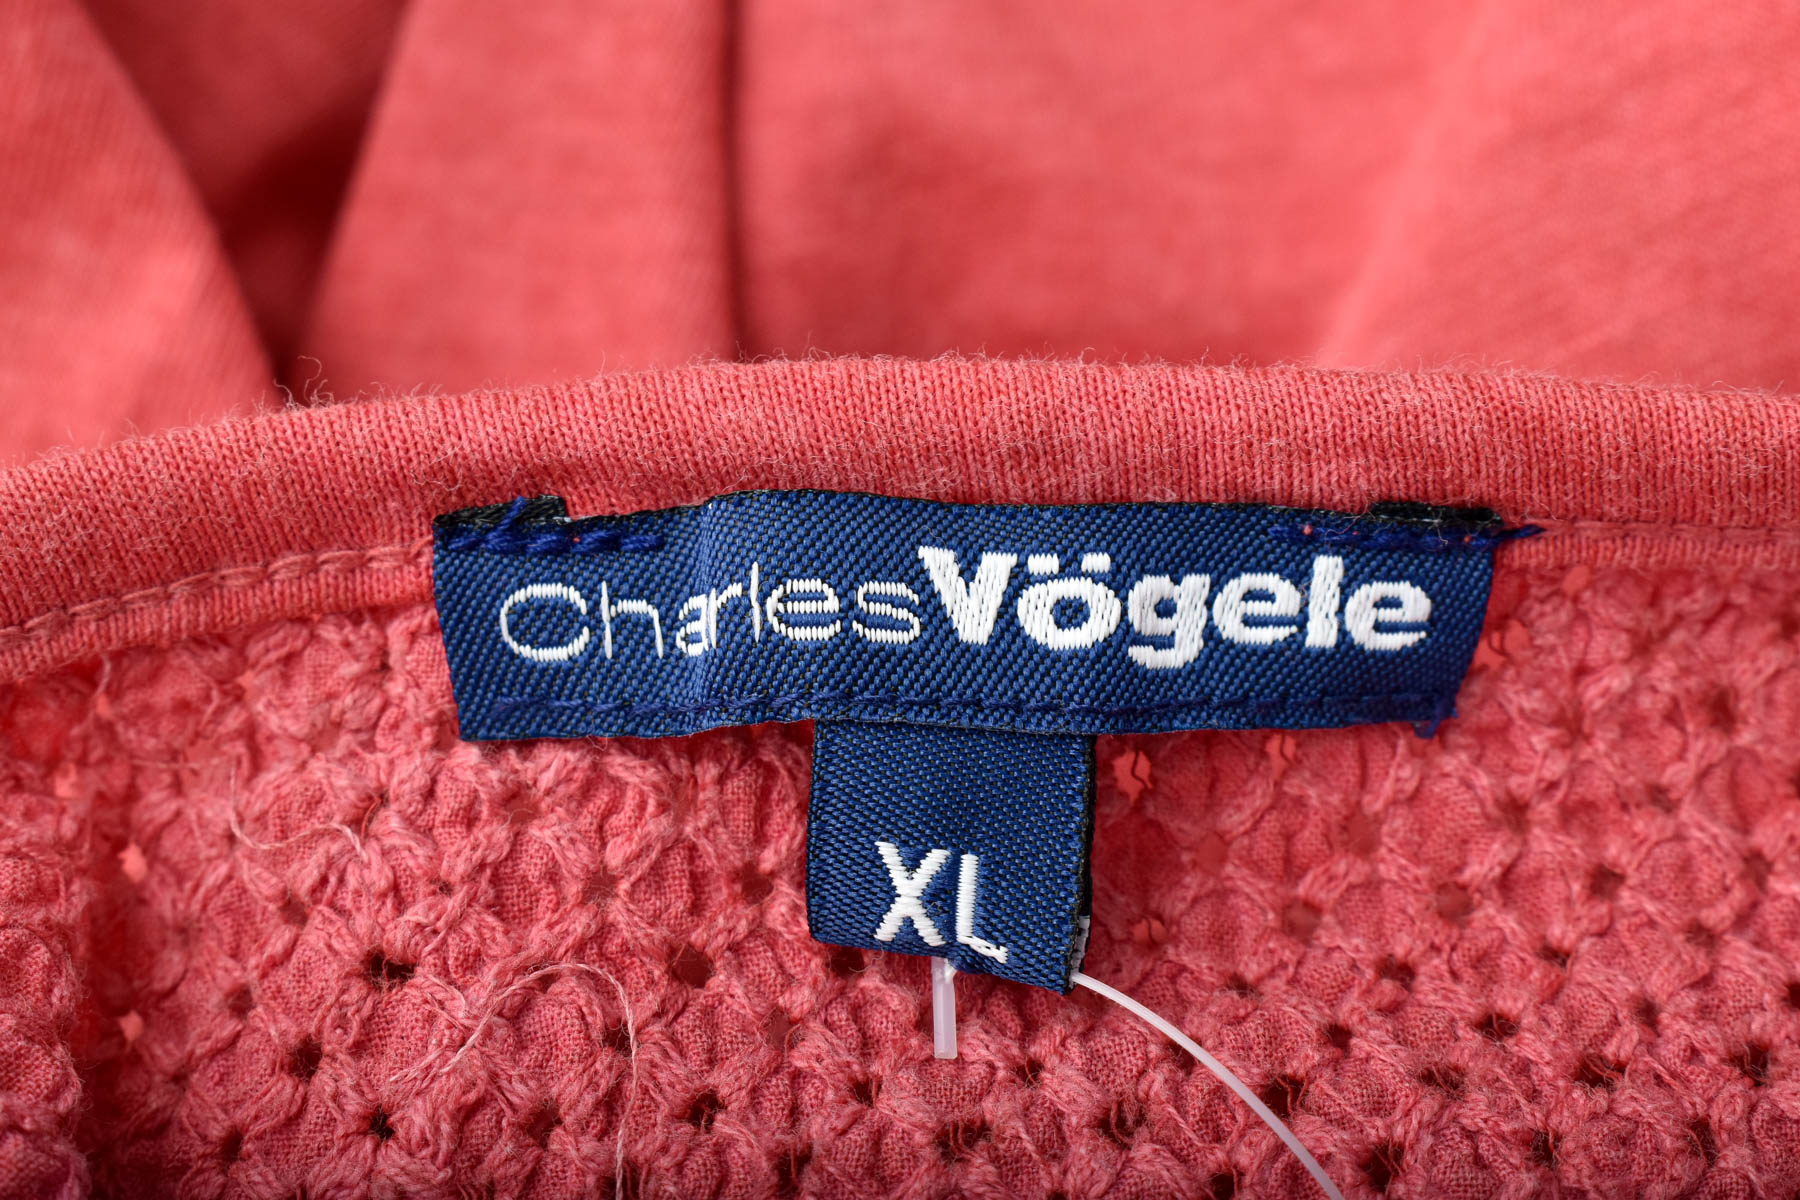 Women's blouse - Charles Vogele - 2